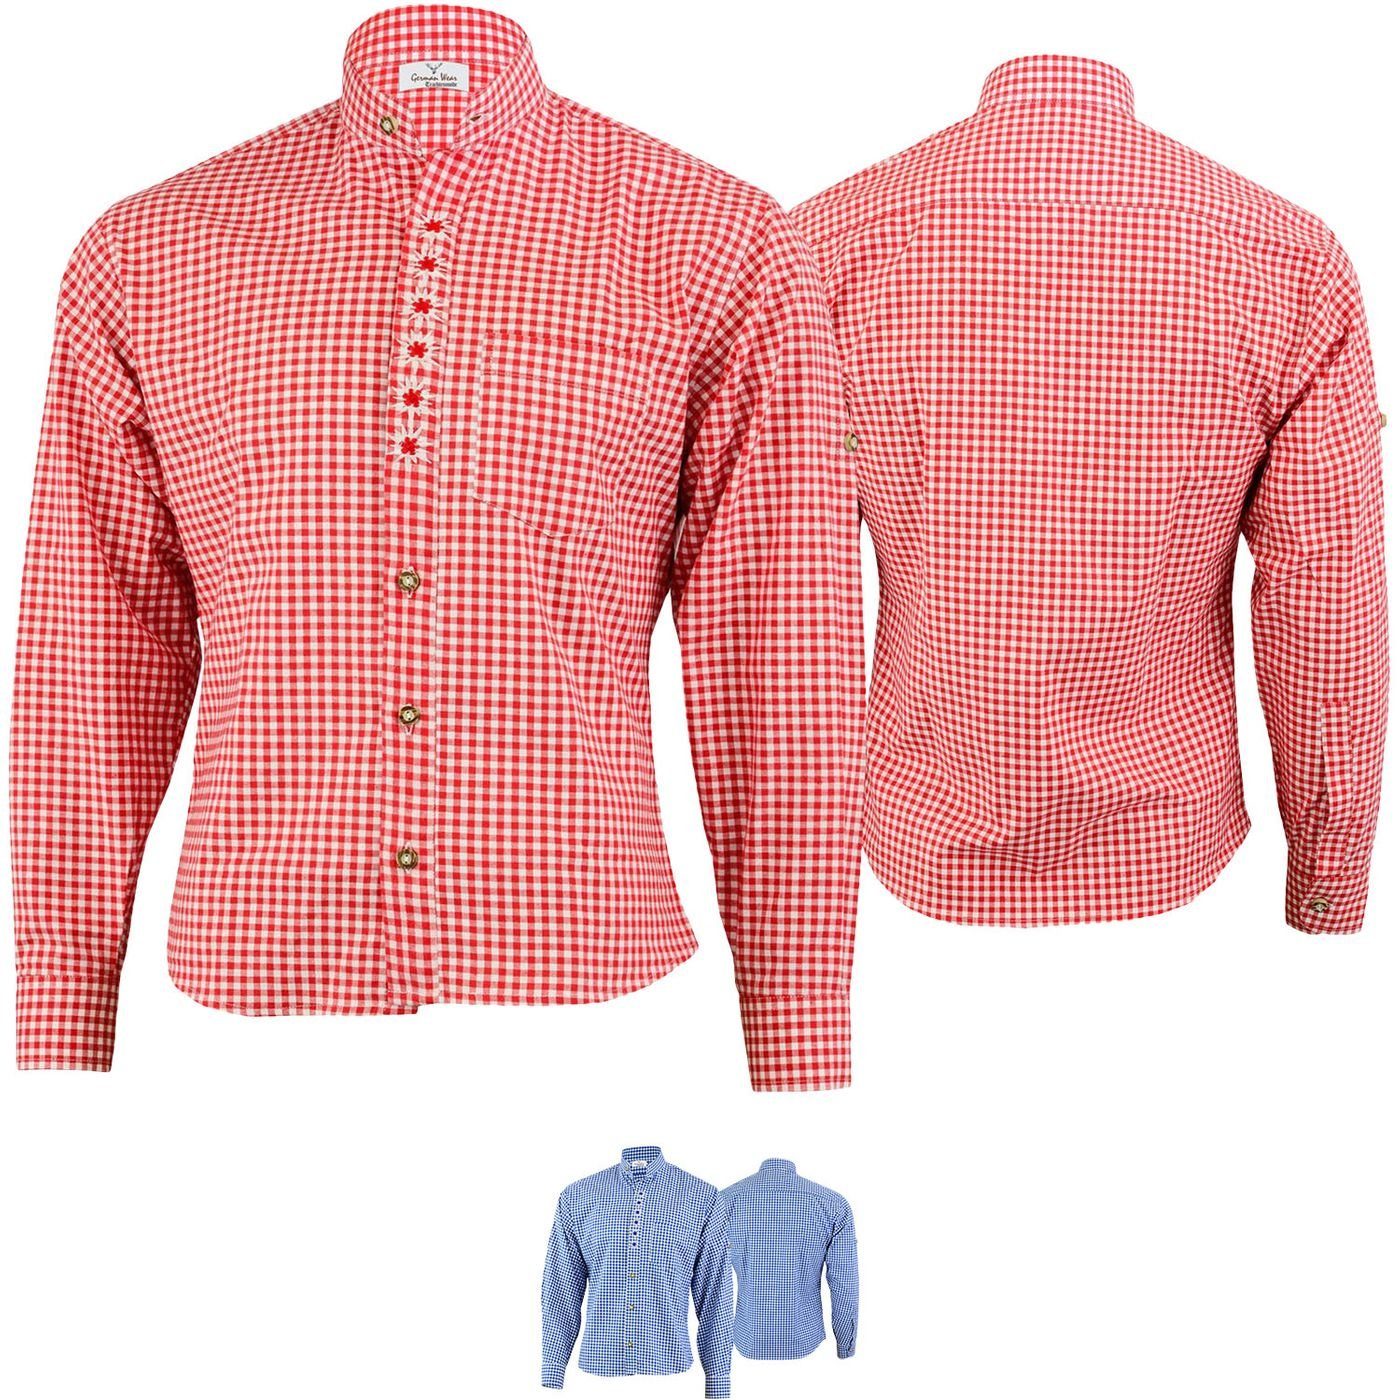 German Wear Trachtenhemd GW1203-EW-SK Trachtenhemd für Trachtenlederhose mit Edelweiß-Stickerei stehkragen Rot | Trachtenhemden